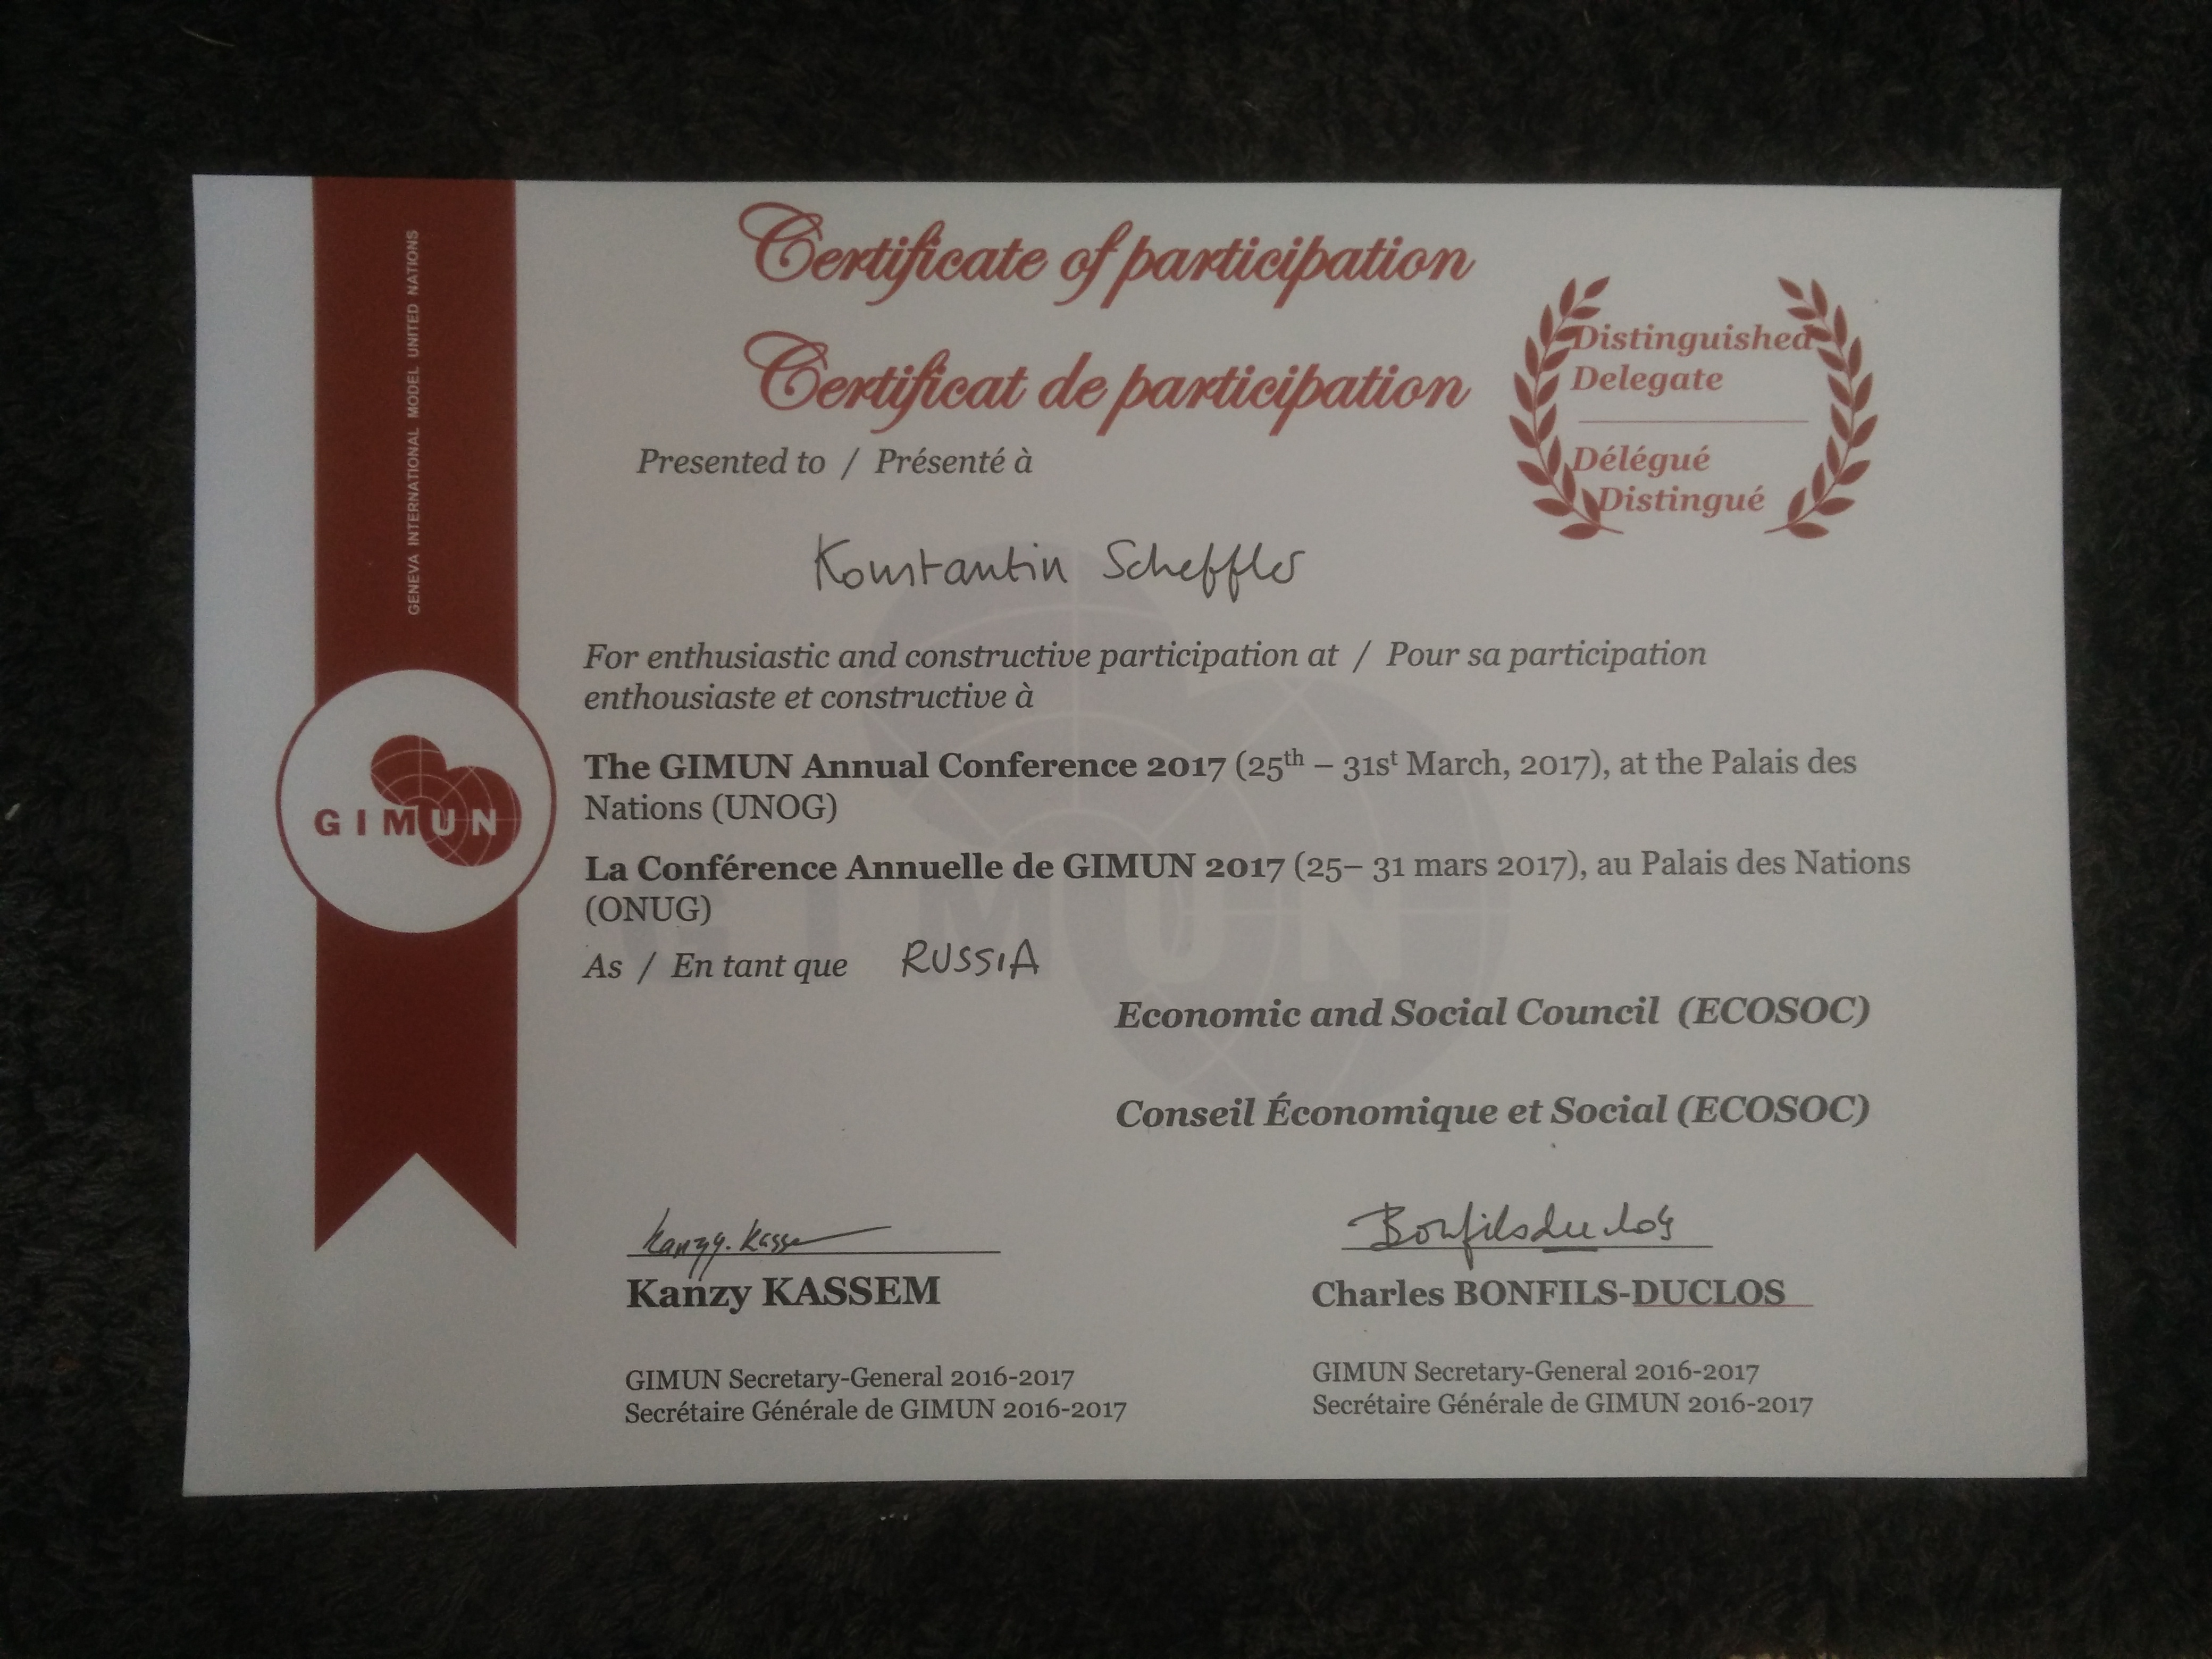 Certificate of participation Konstantin Scheffler